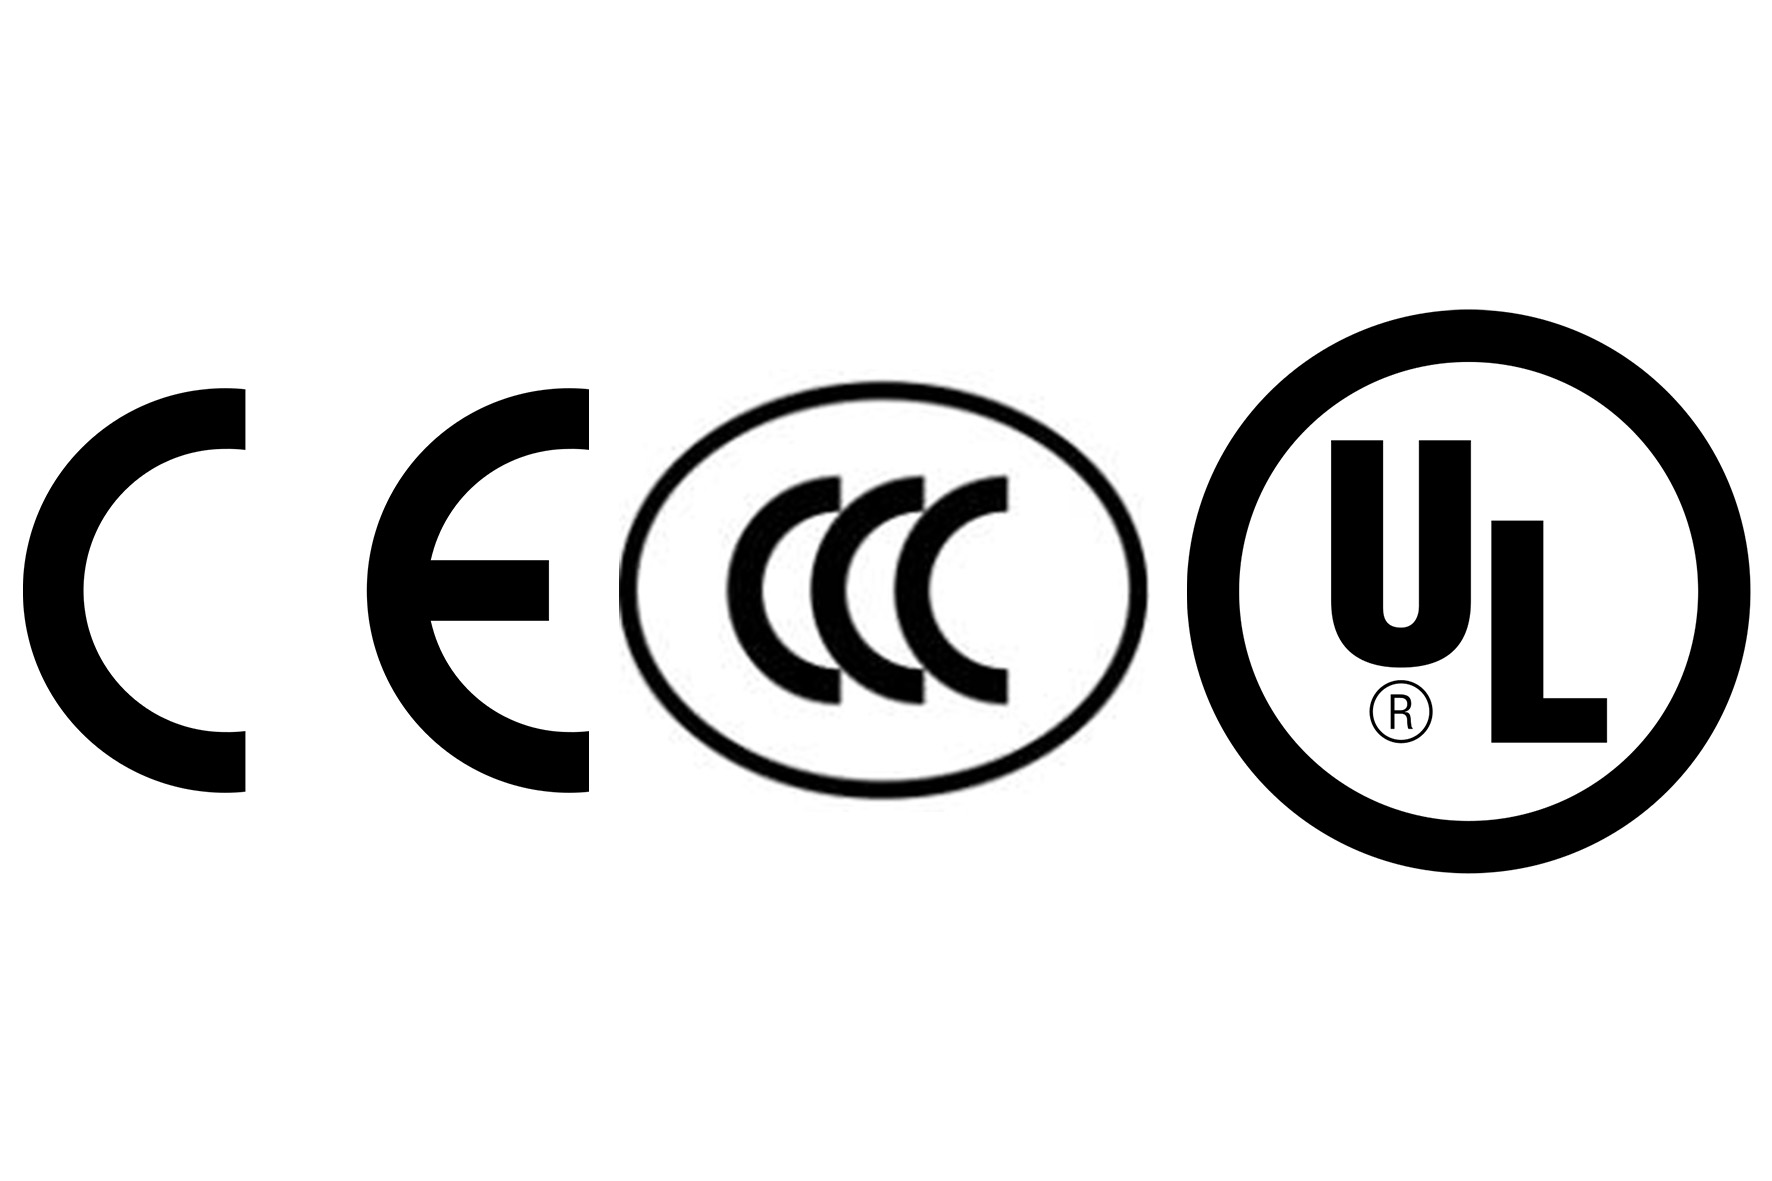 CE mark, CCC mark, UL mark